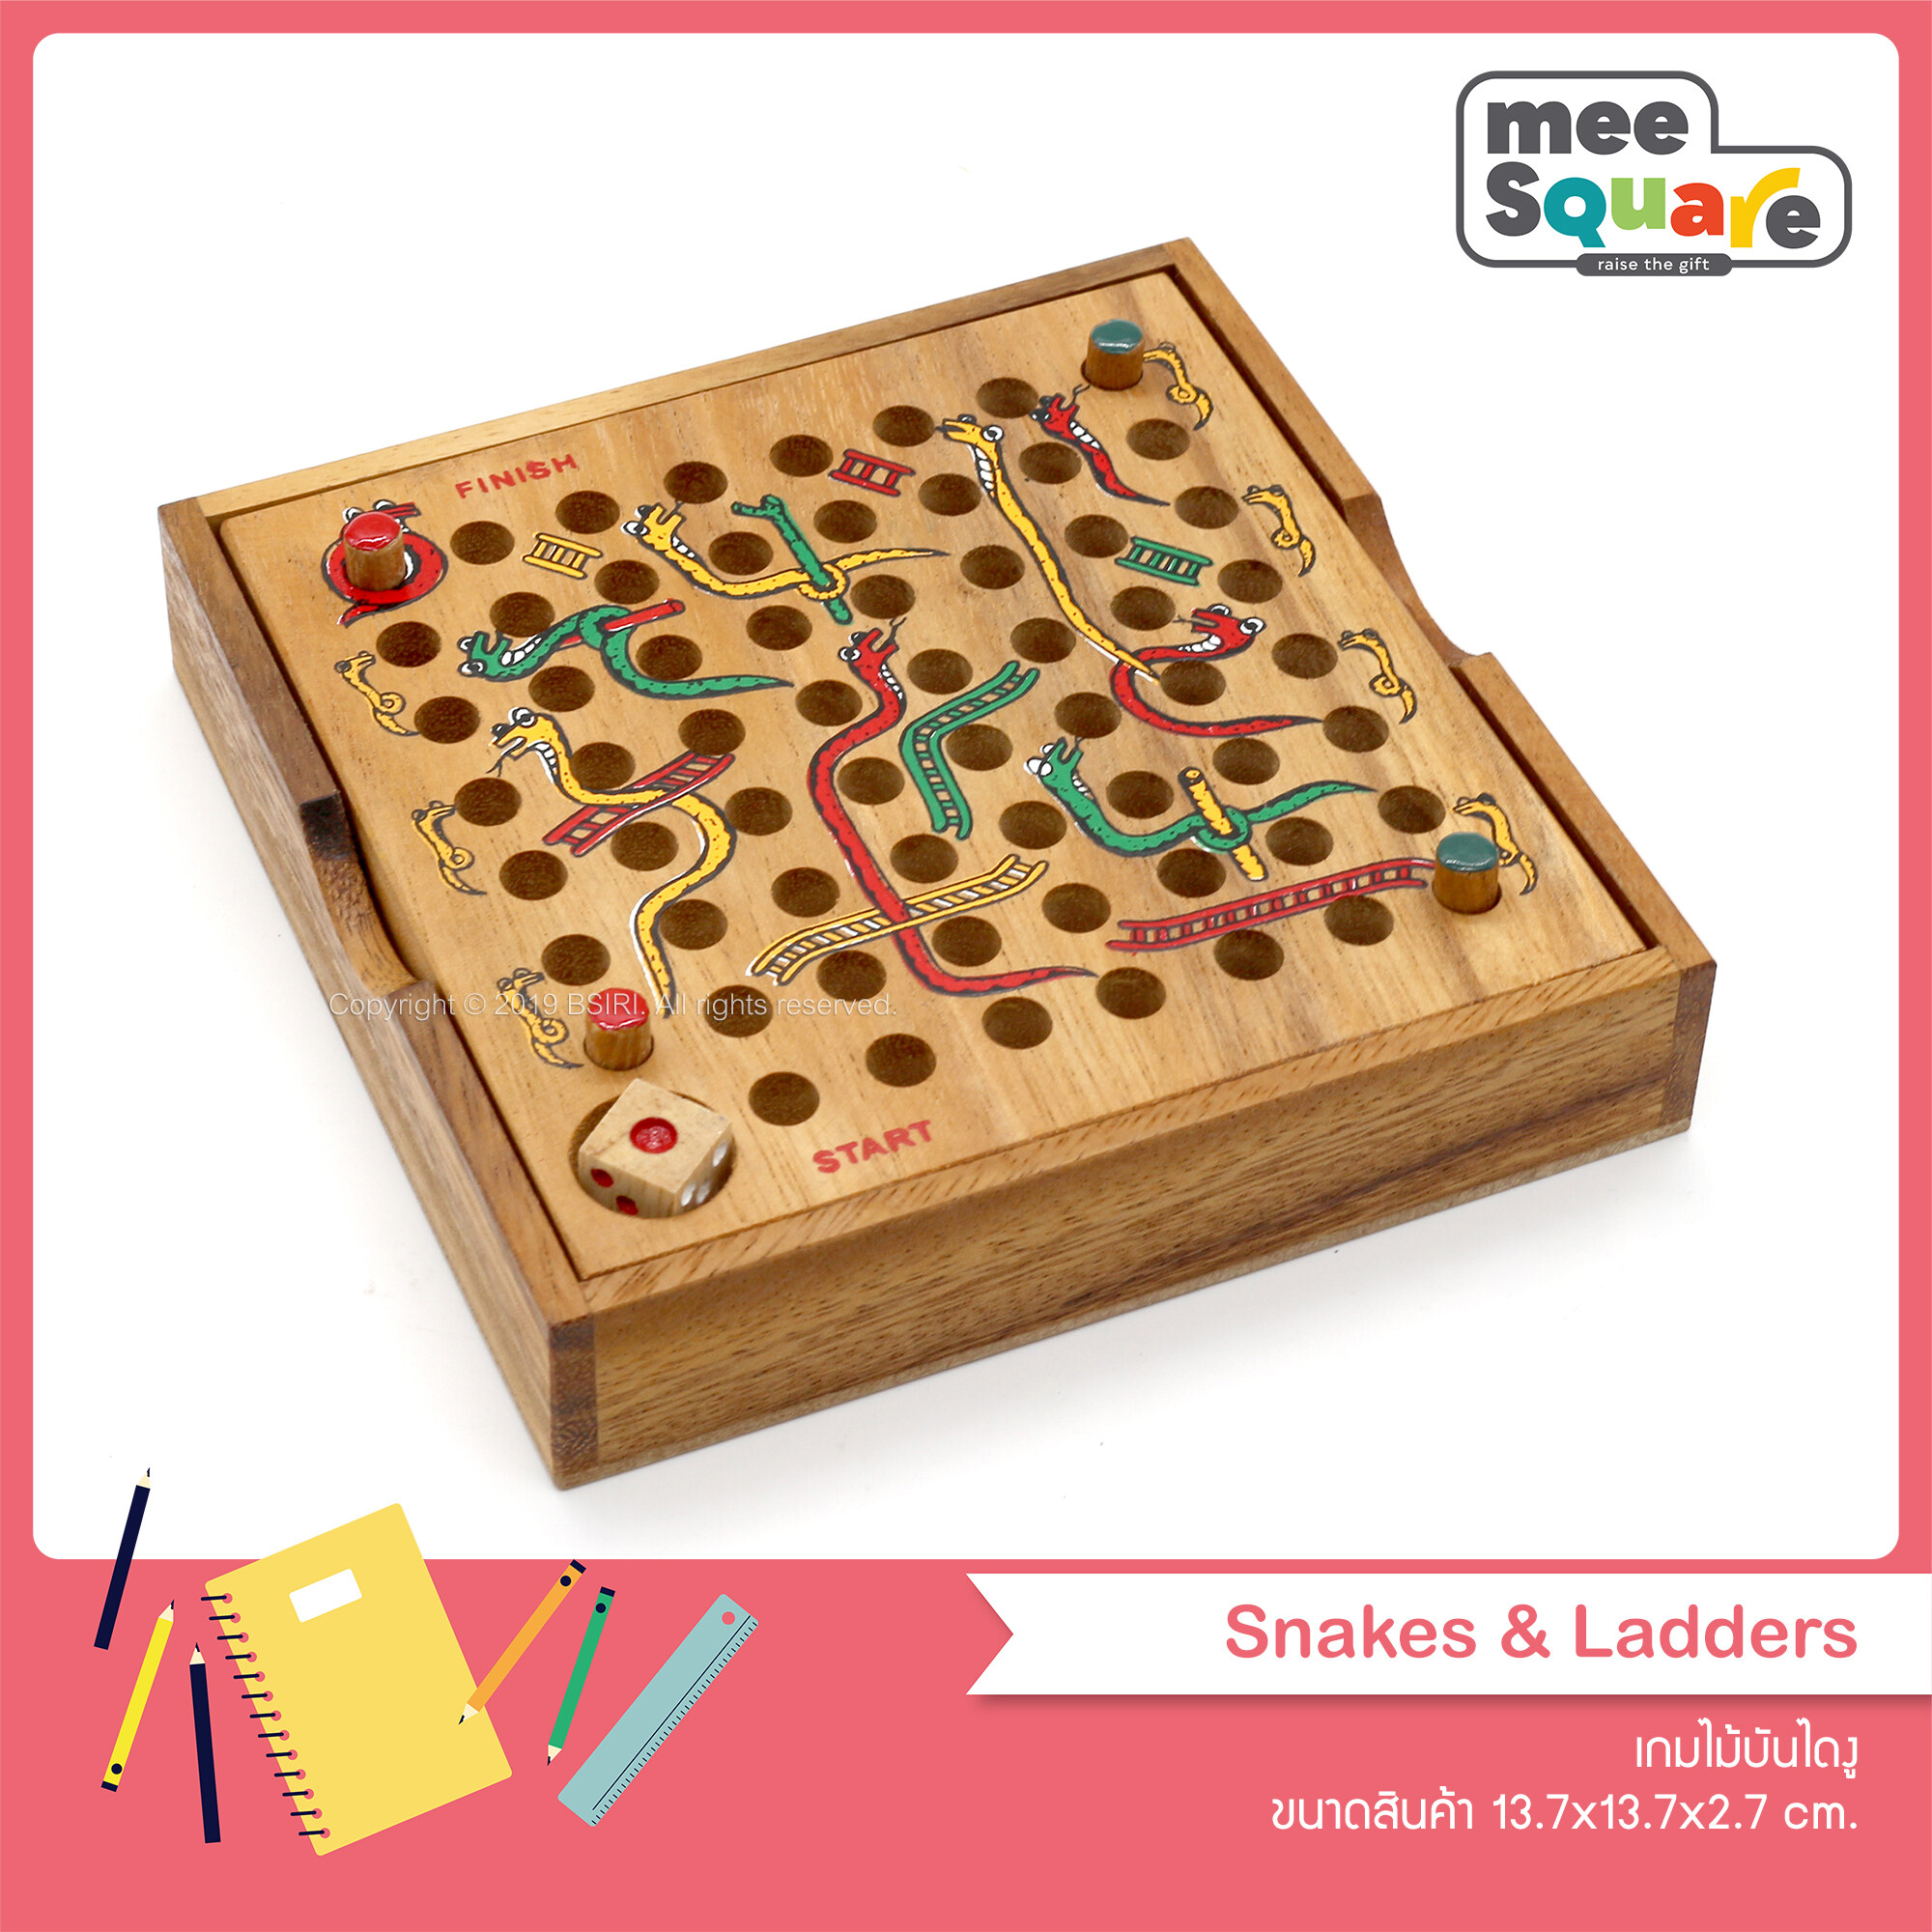 เกมบันไดงู เกมงูตกบันได (Snake and Ladder) Size L เกมกระดานงู เกมกระดาน เกมส์ไม้บริหารสมอง เกมส์ฝึกทักษะวางกลยุทธ์ BSIRI เกมส์ไม้ Wood Board Game